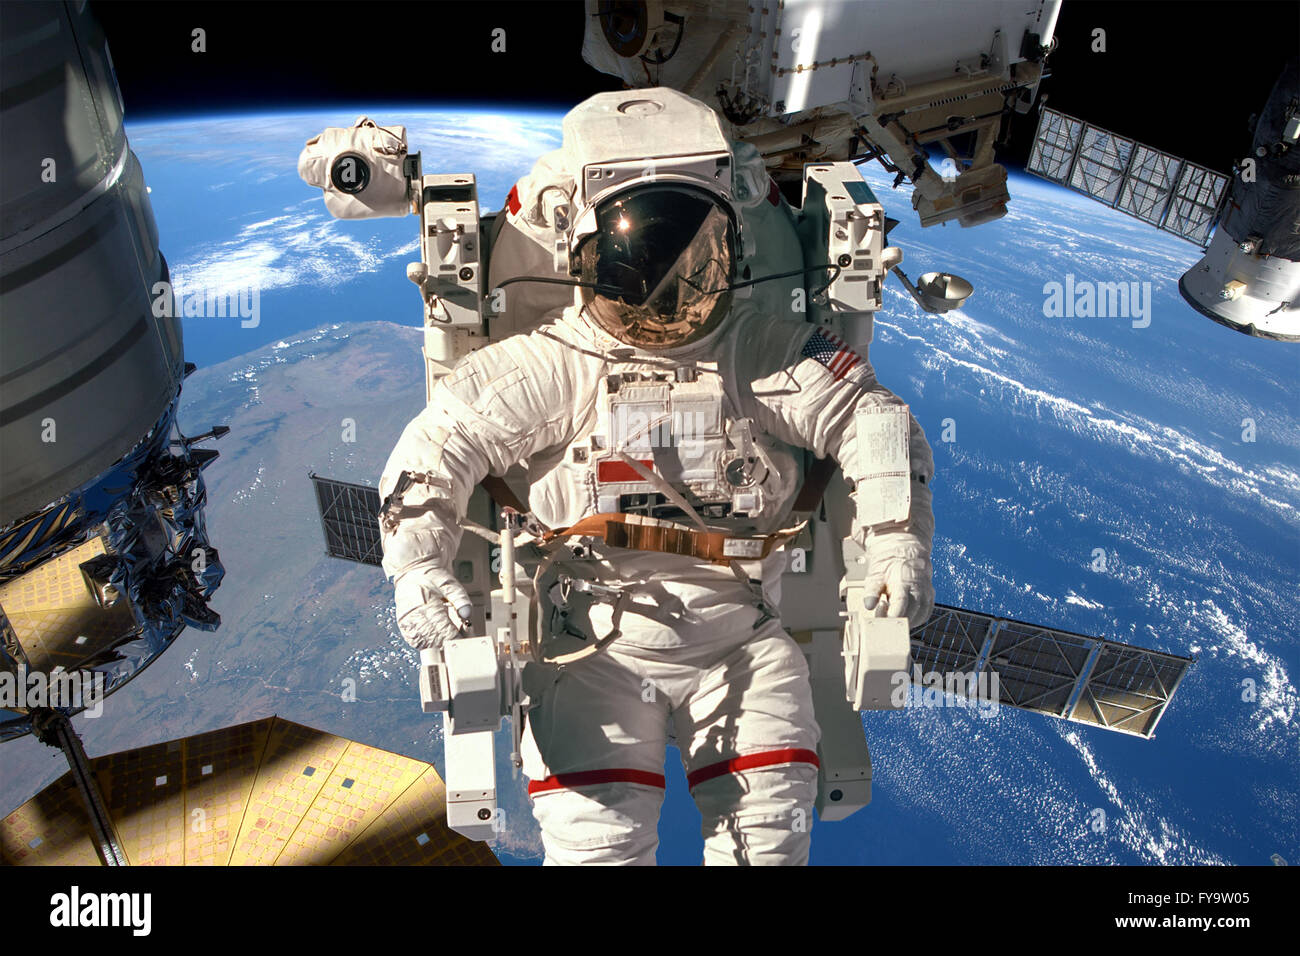 Station spatiale internationale et astronaute dans l'espace au cours de la planète Terre. Éléments de cette image fournie par la NASA. Banque D'Images